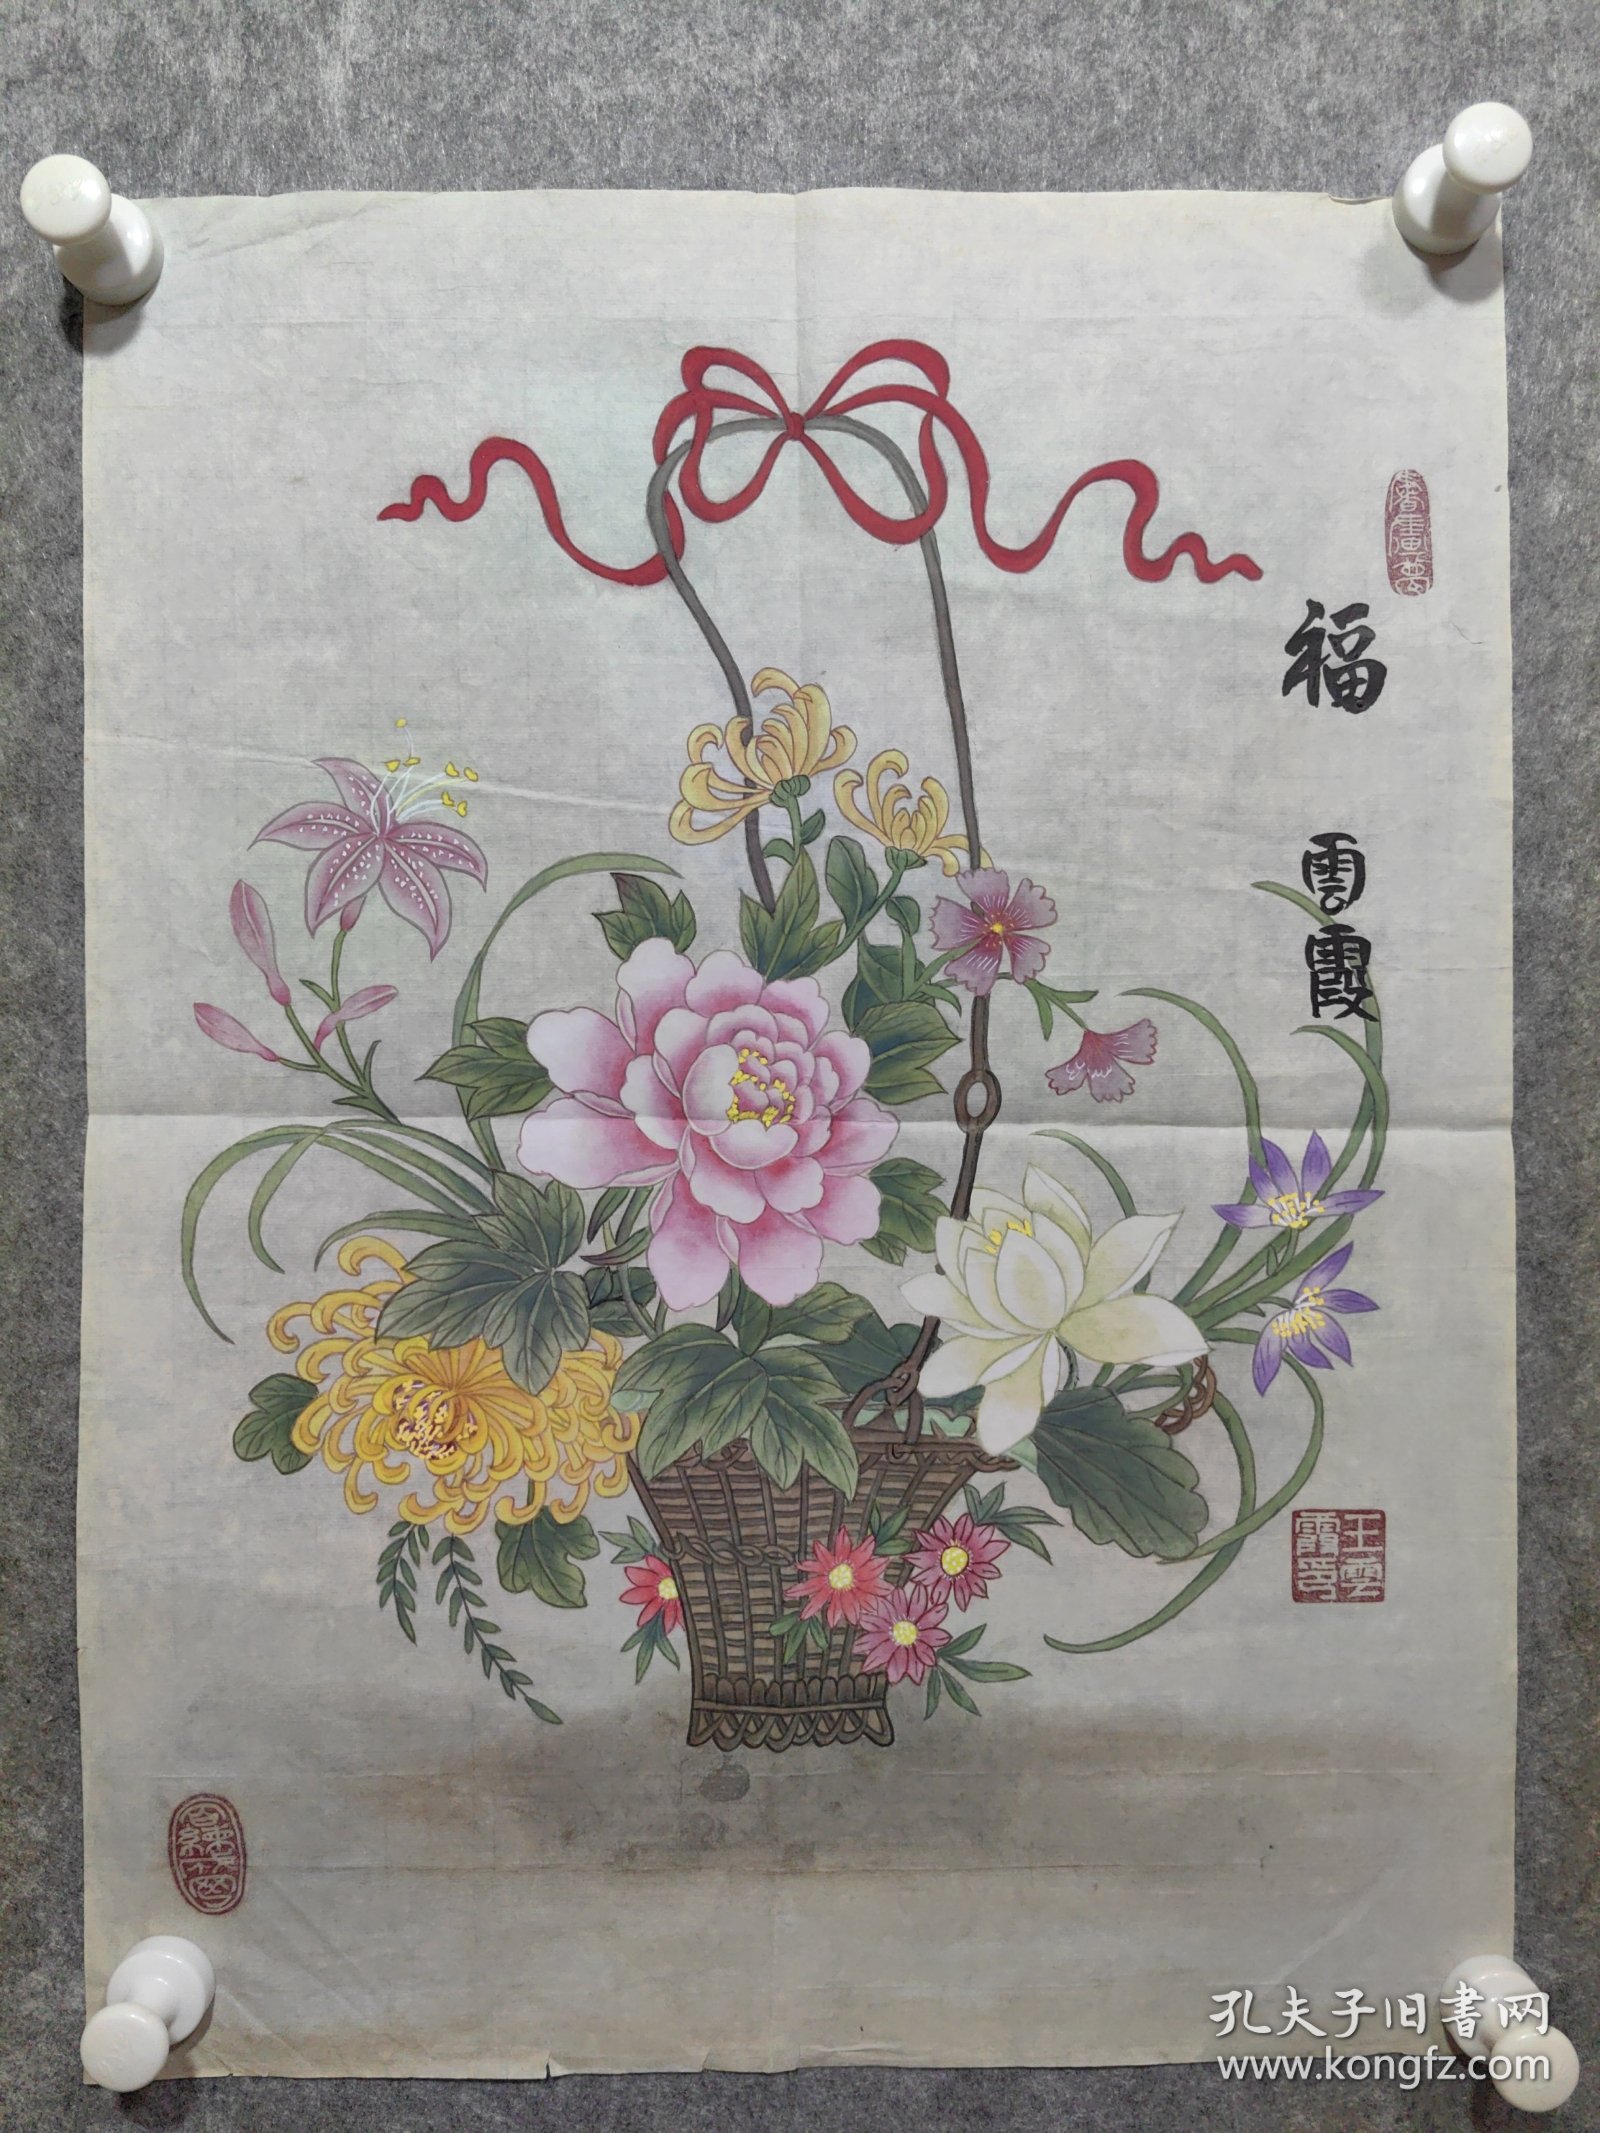 王雲霞 精品工笔花卉一副 保真包手绘